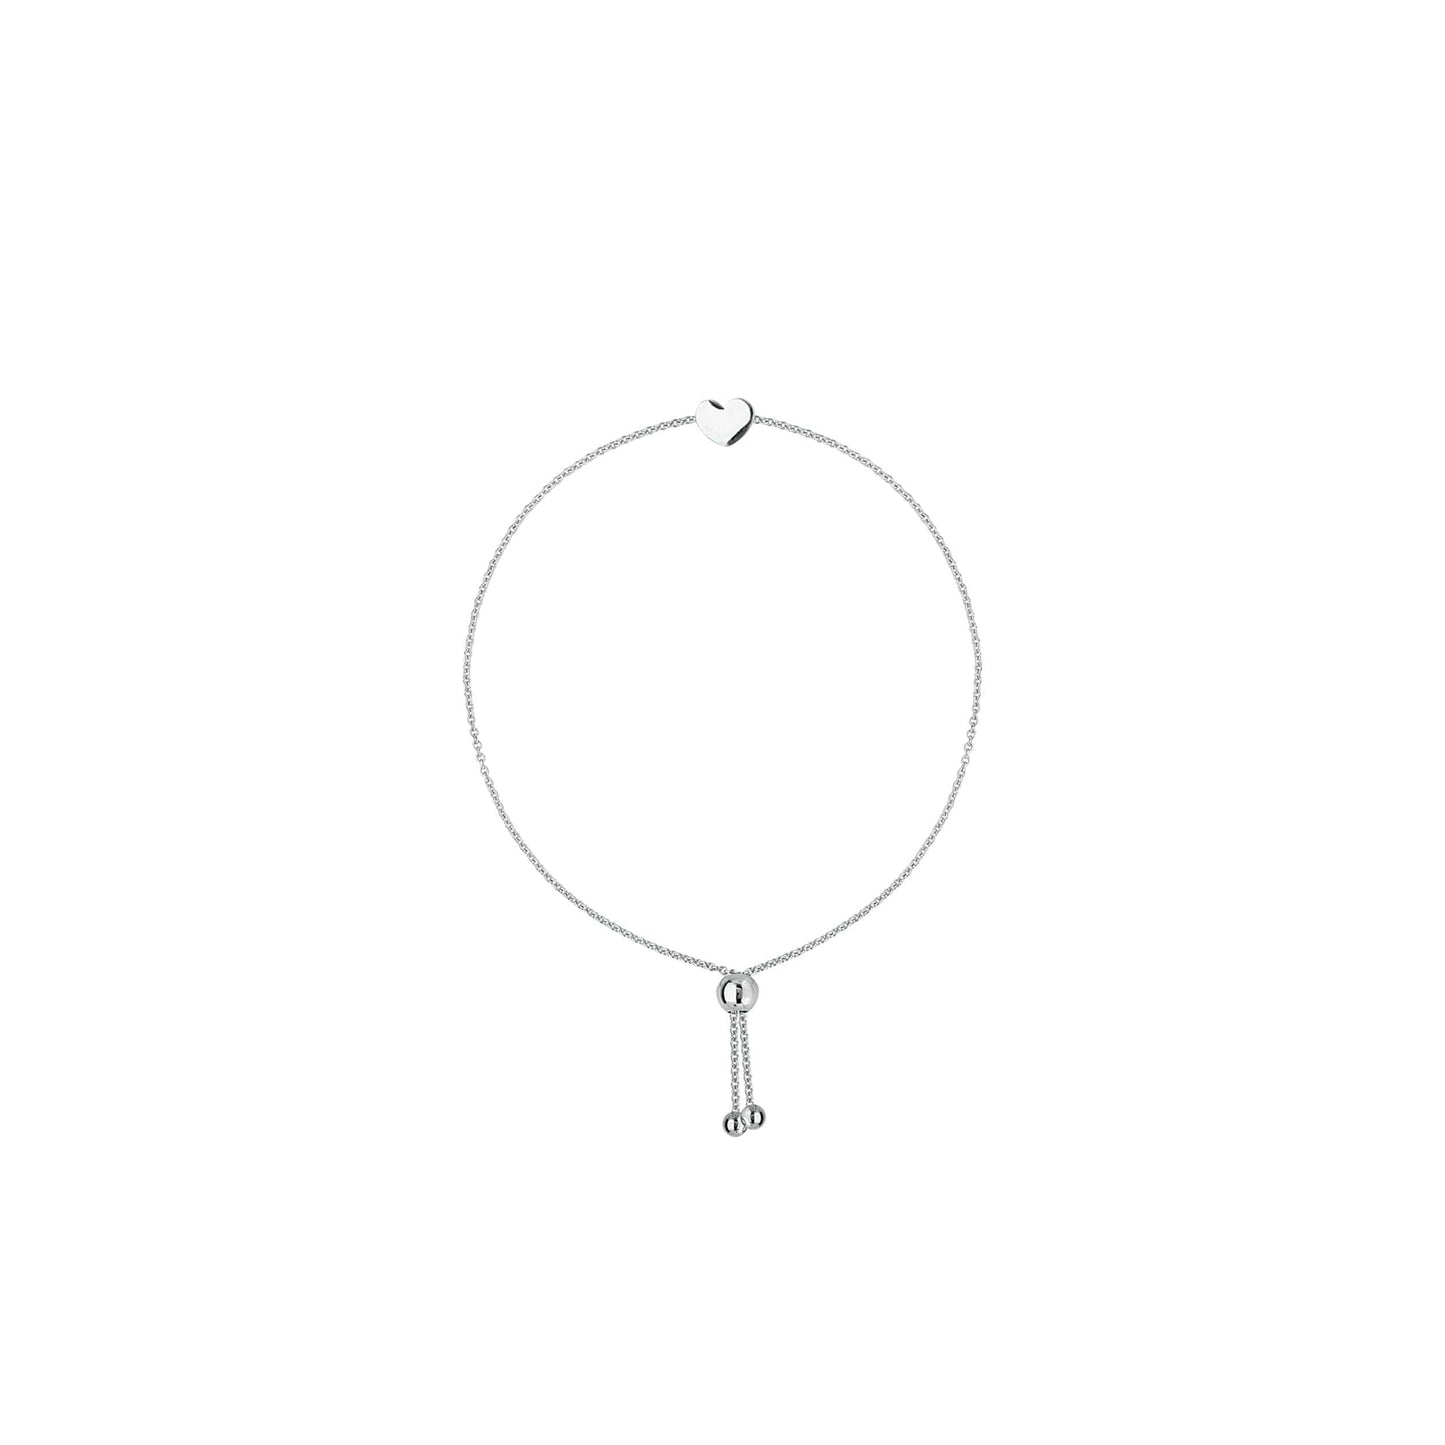 Load image into Gallery viewer, Adjustable Heart Bracelet - Happy Jewelers Fine Jewelry Lifetime Warranty
